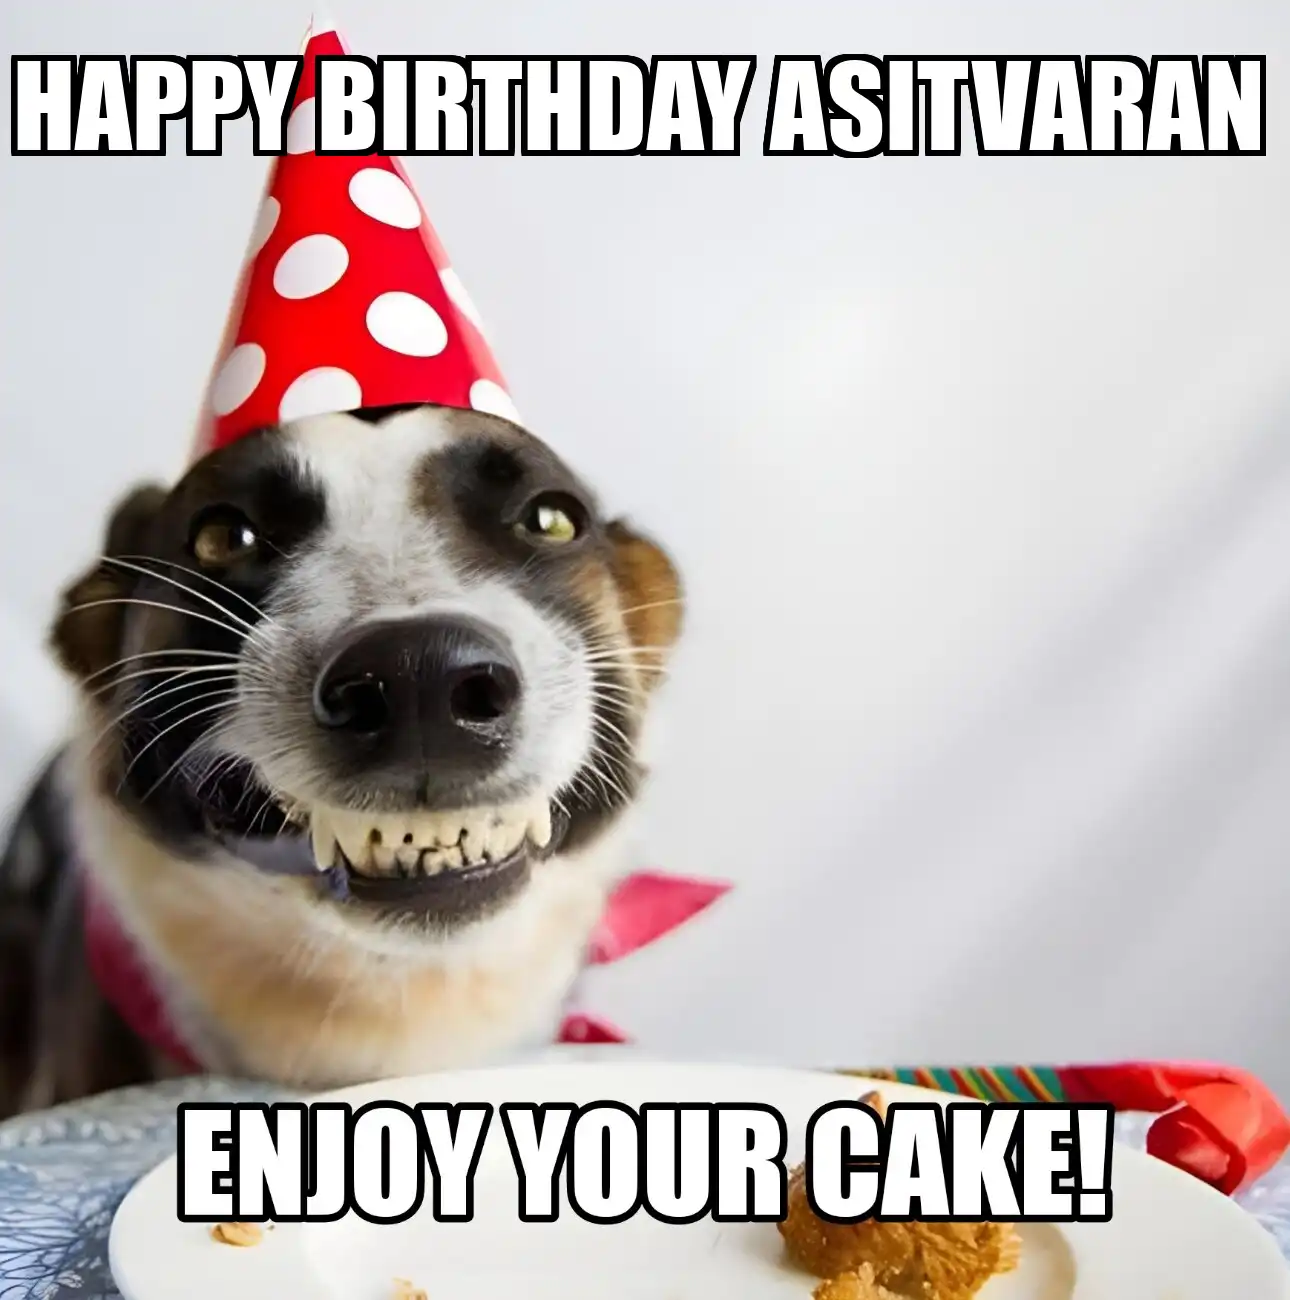 Happy Birthday Asitvaran Enjoy Your Cake Dog Meme